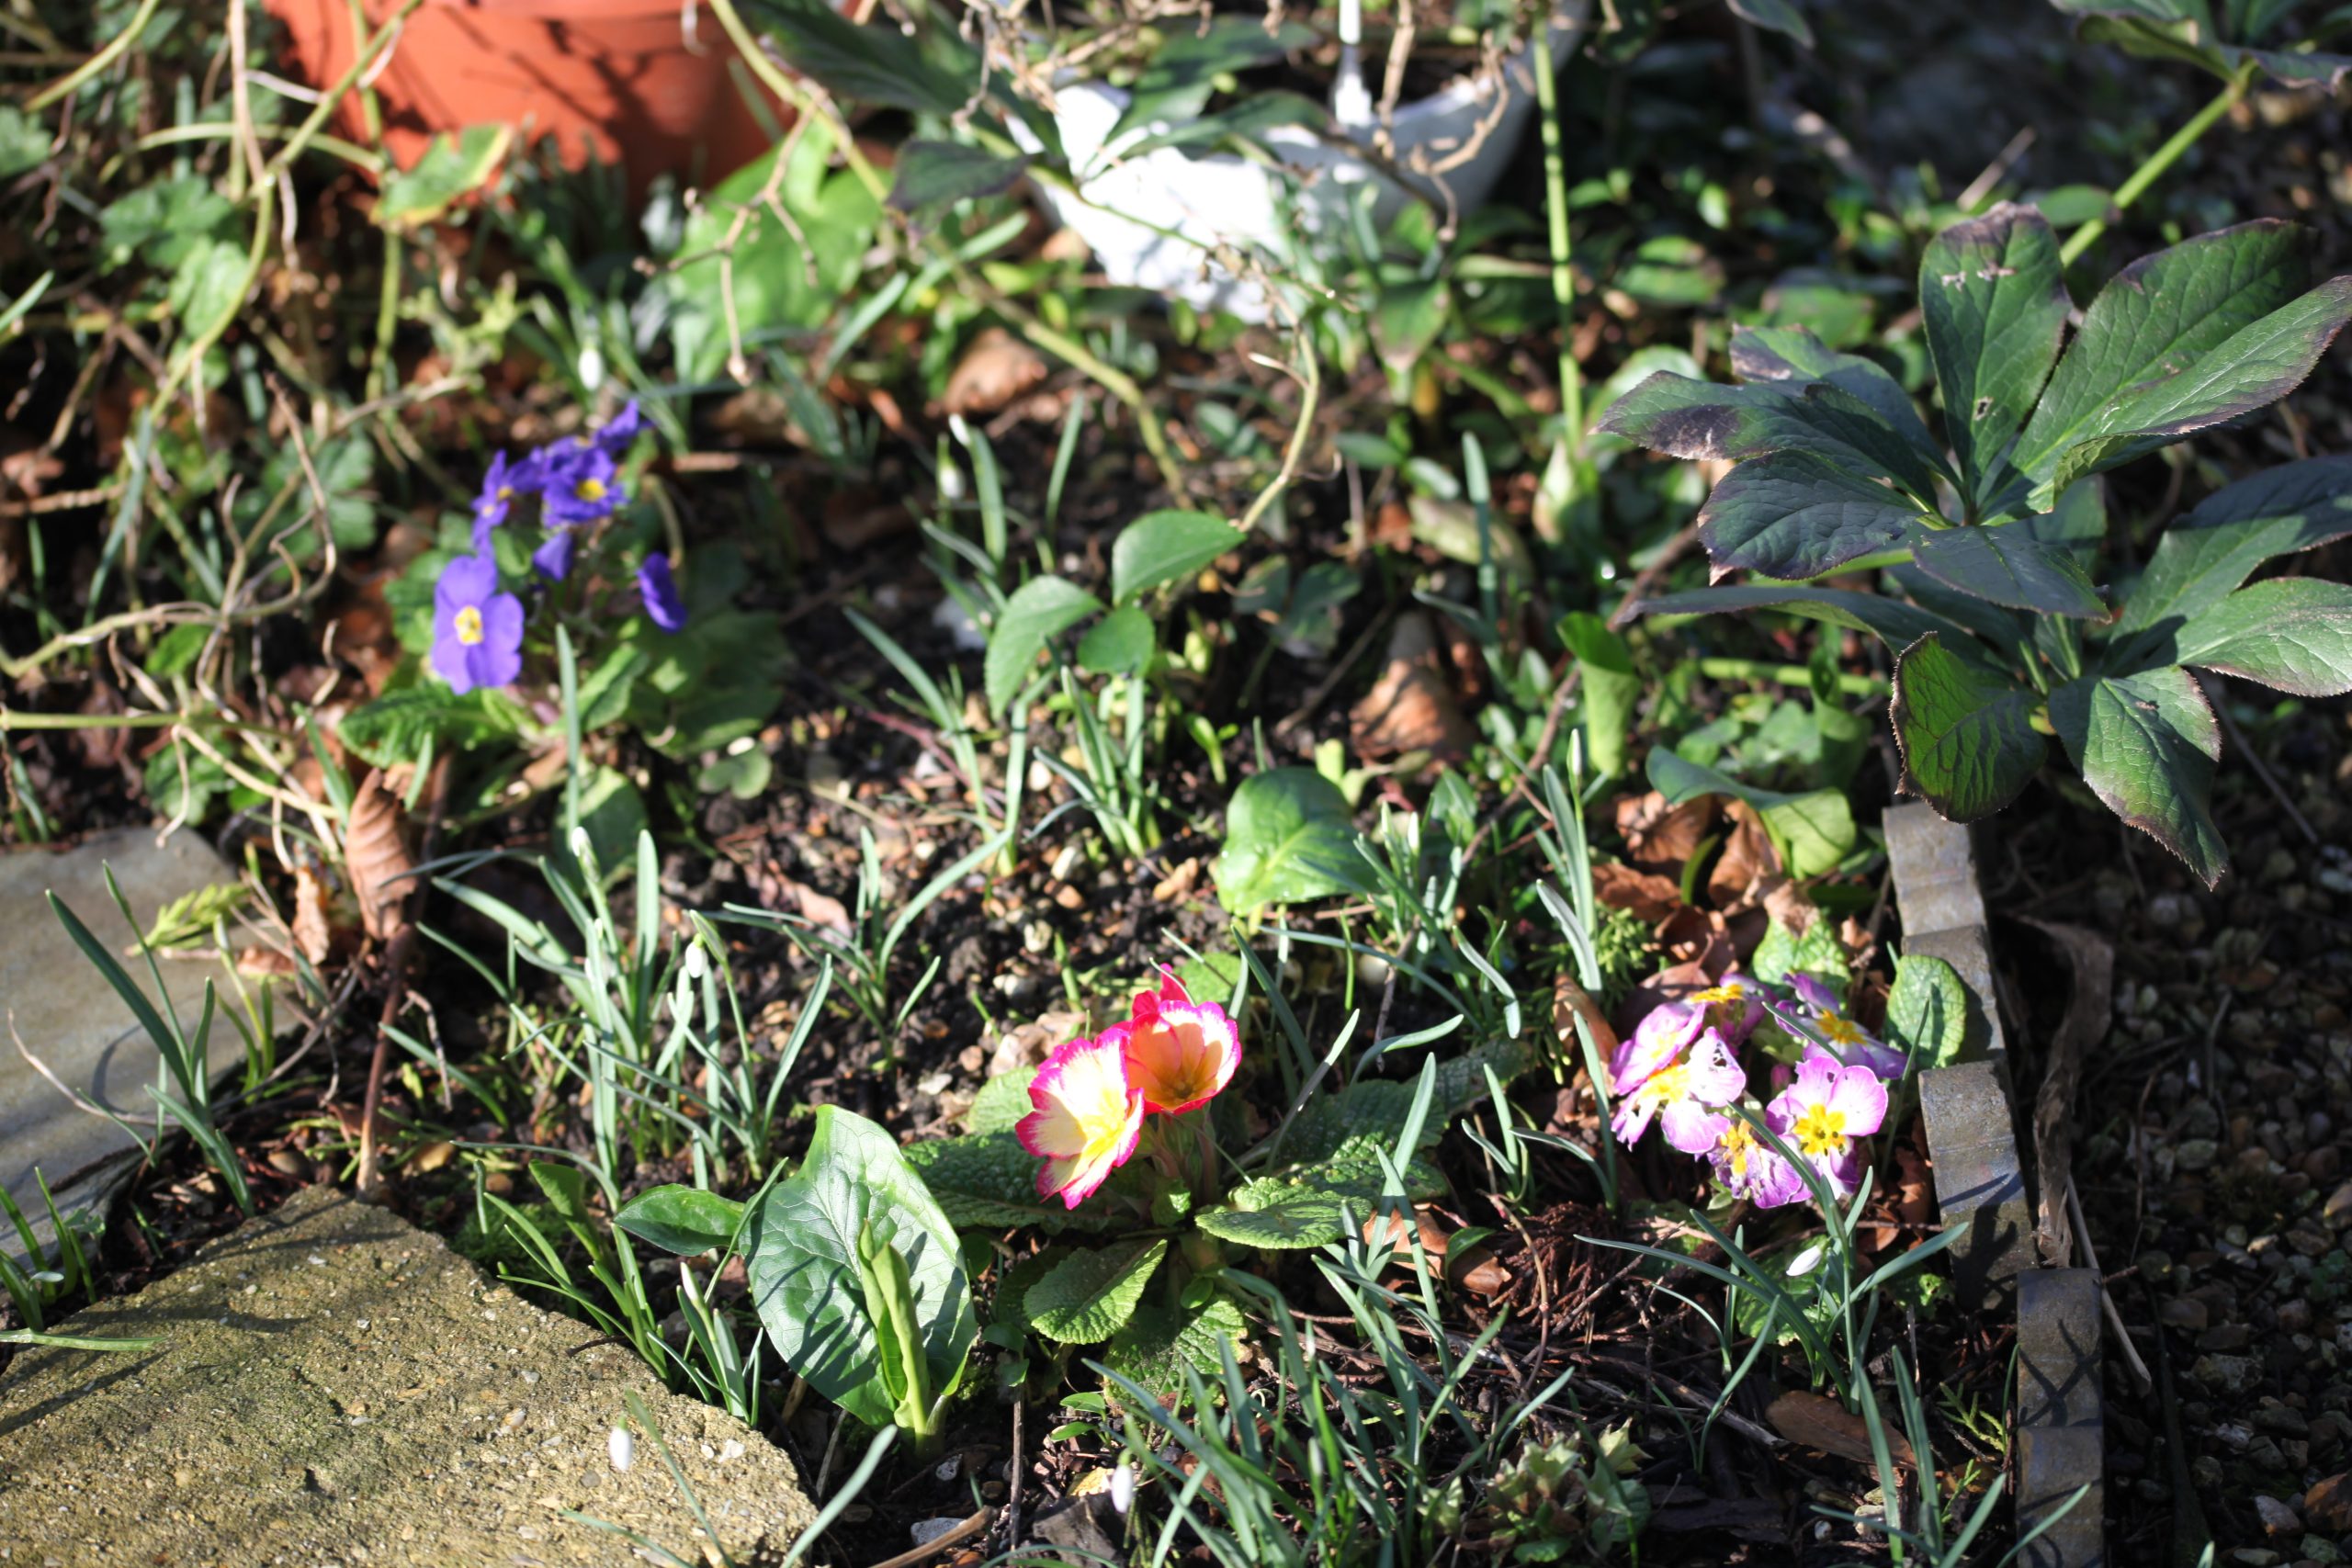 Primulas and snowdrops